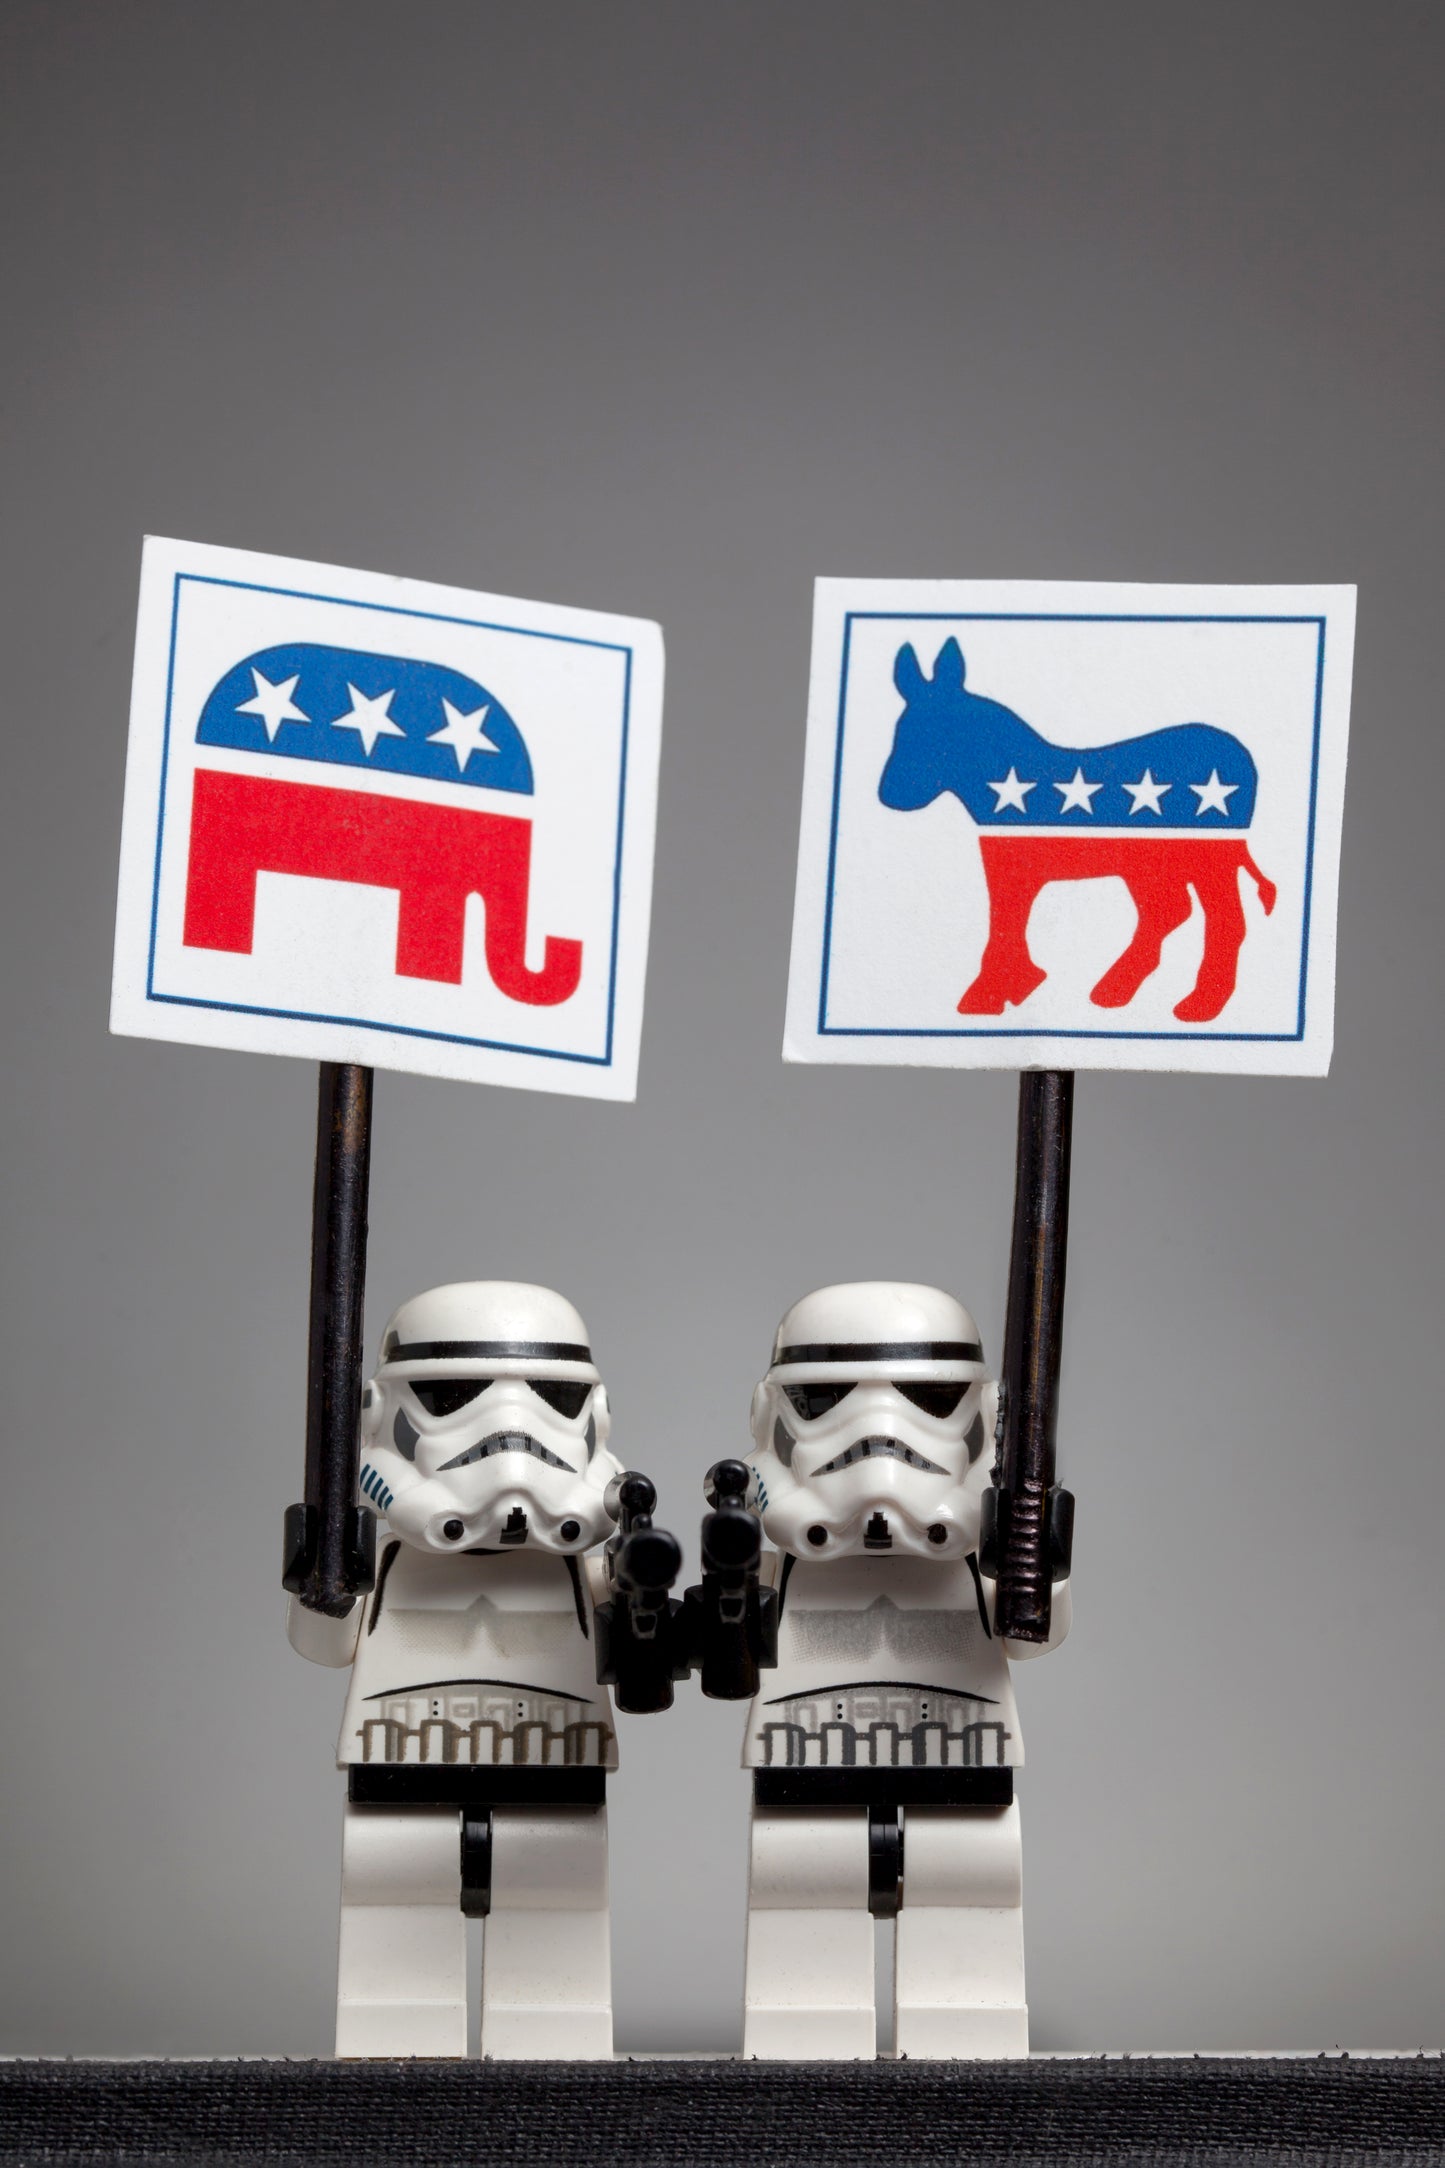 Democratic vs Republican troopers